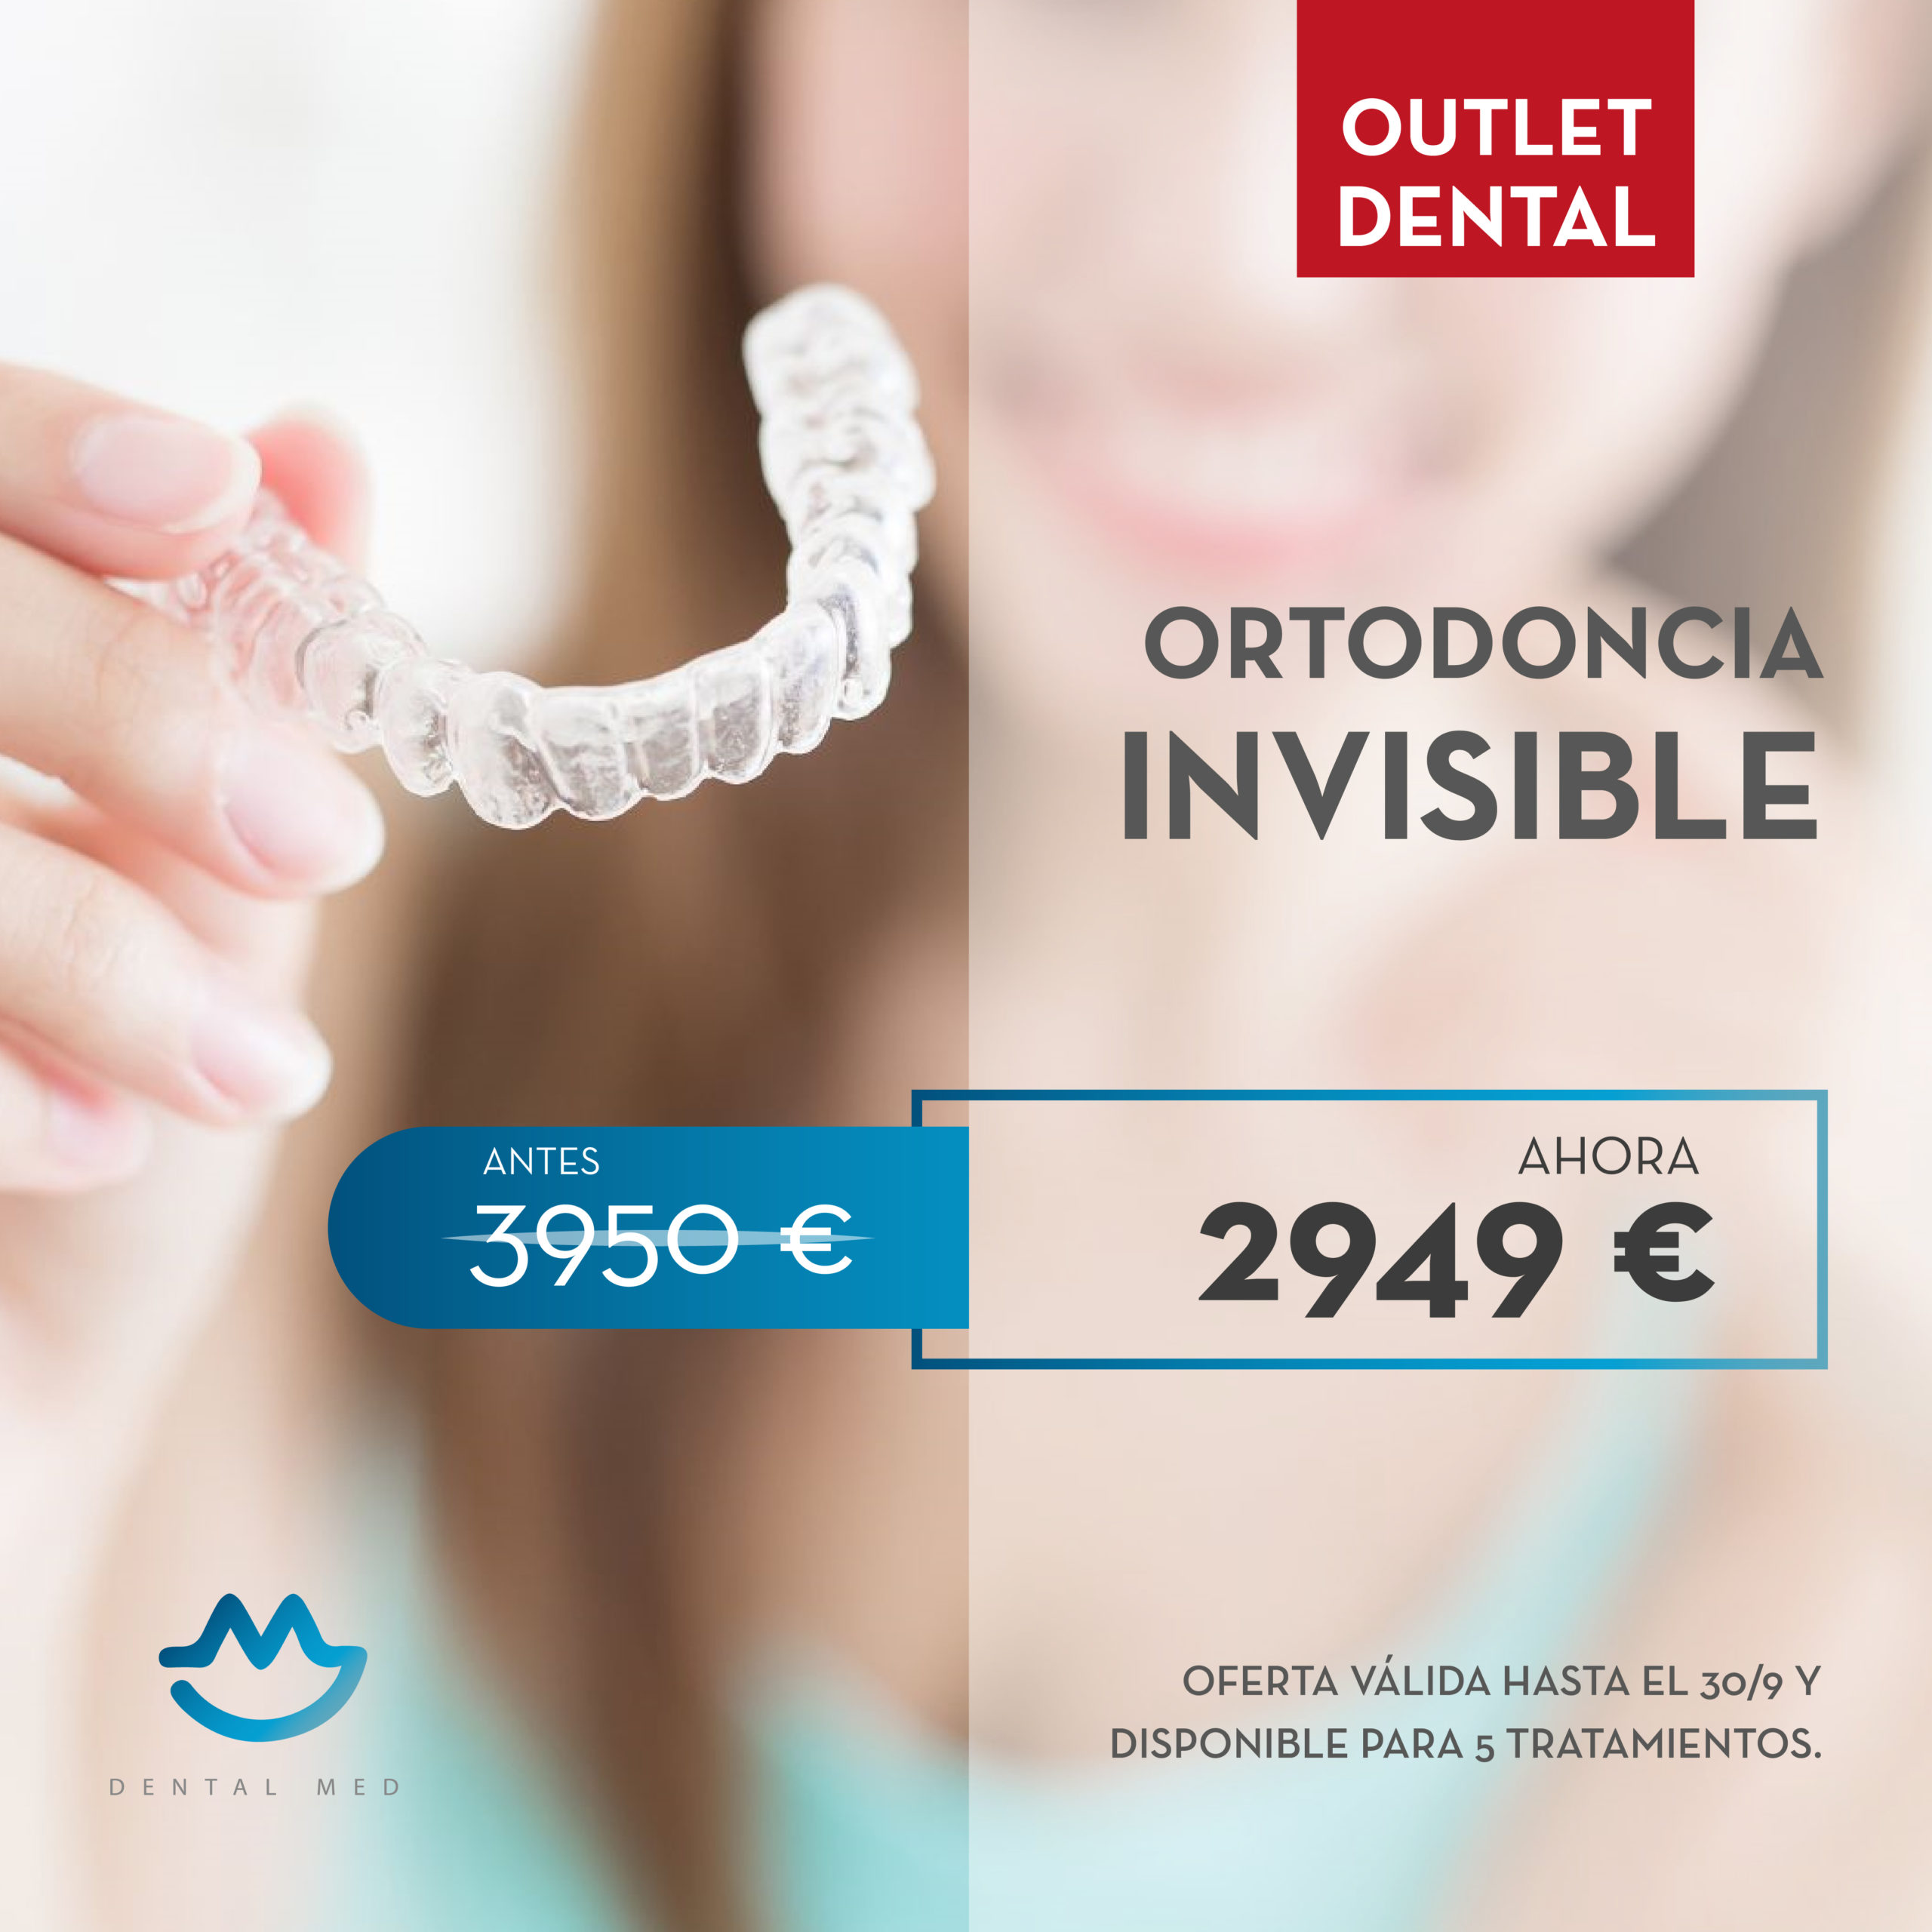 Promoción ortodoncia invisible en Sevilla - Dental Med, clínica dental en Sevilla - Tratamiento de ortodoncia invisible